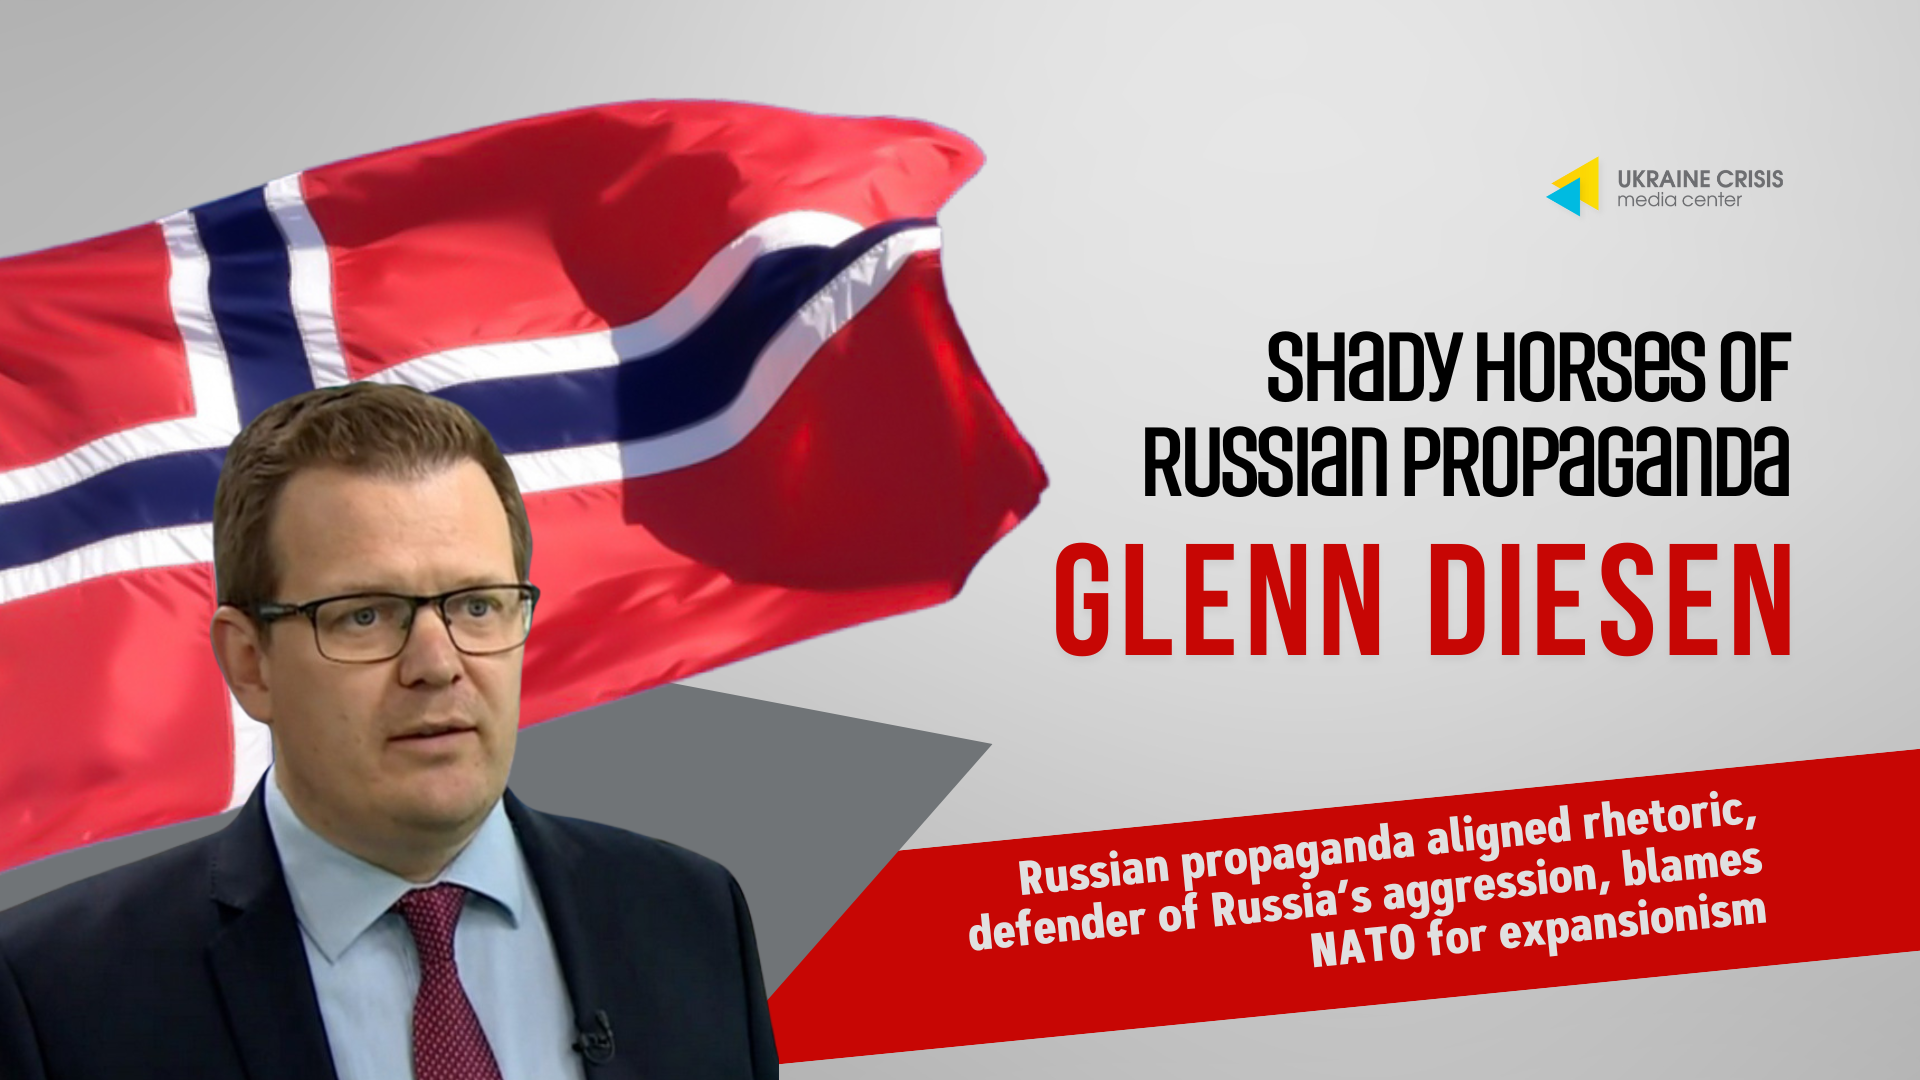 Kremlin Shady Horse: Glenn Diesen – Retorikk på linje med russisk propaganda, forsvarer av russisk aggresjon, anklager NATO for ekspansjonisme